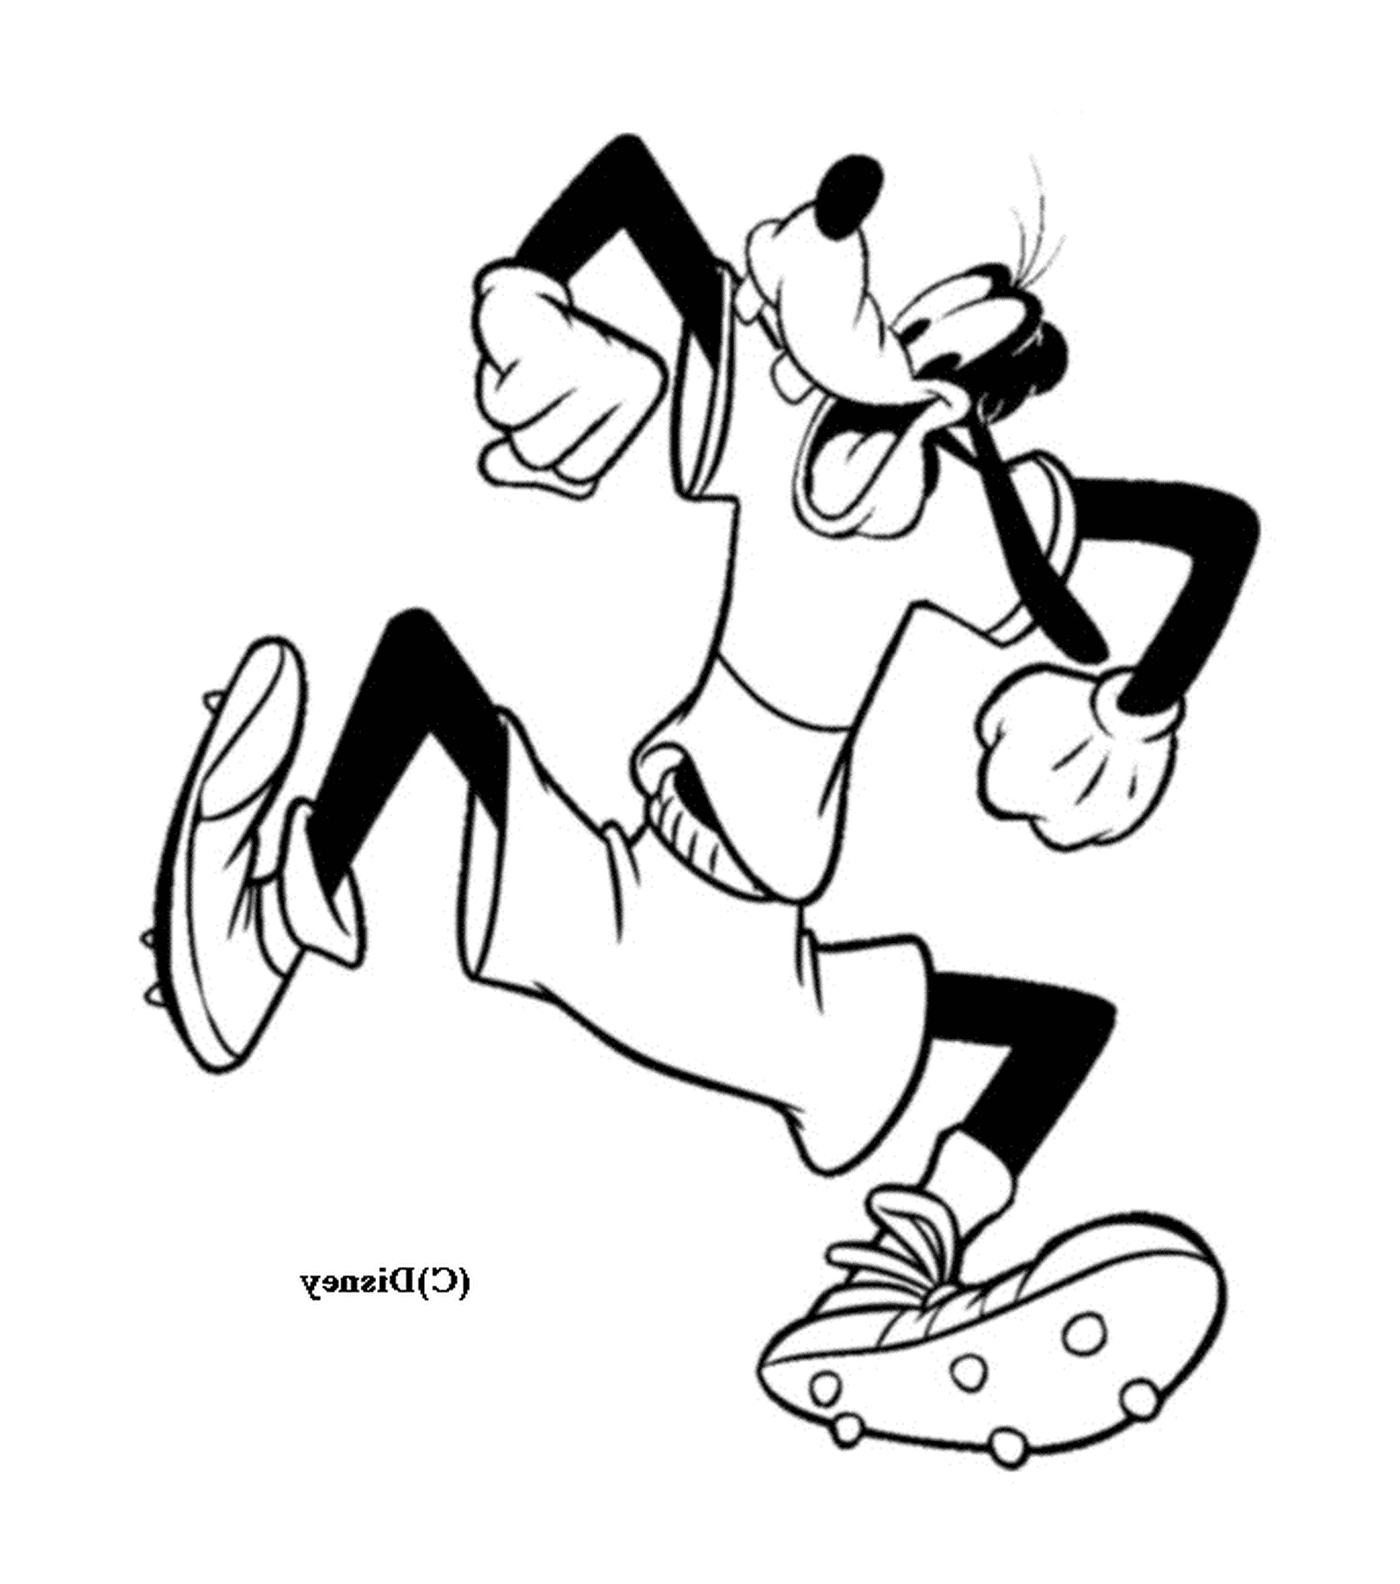  Dingo corre usando pantalones cortos 